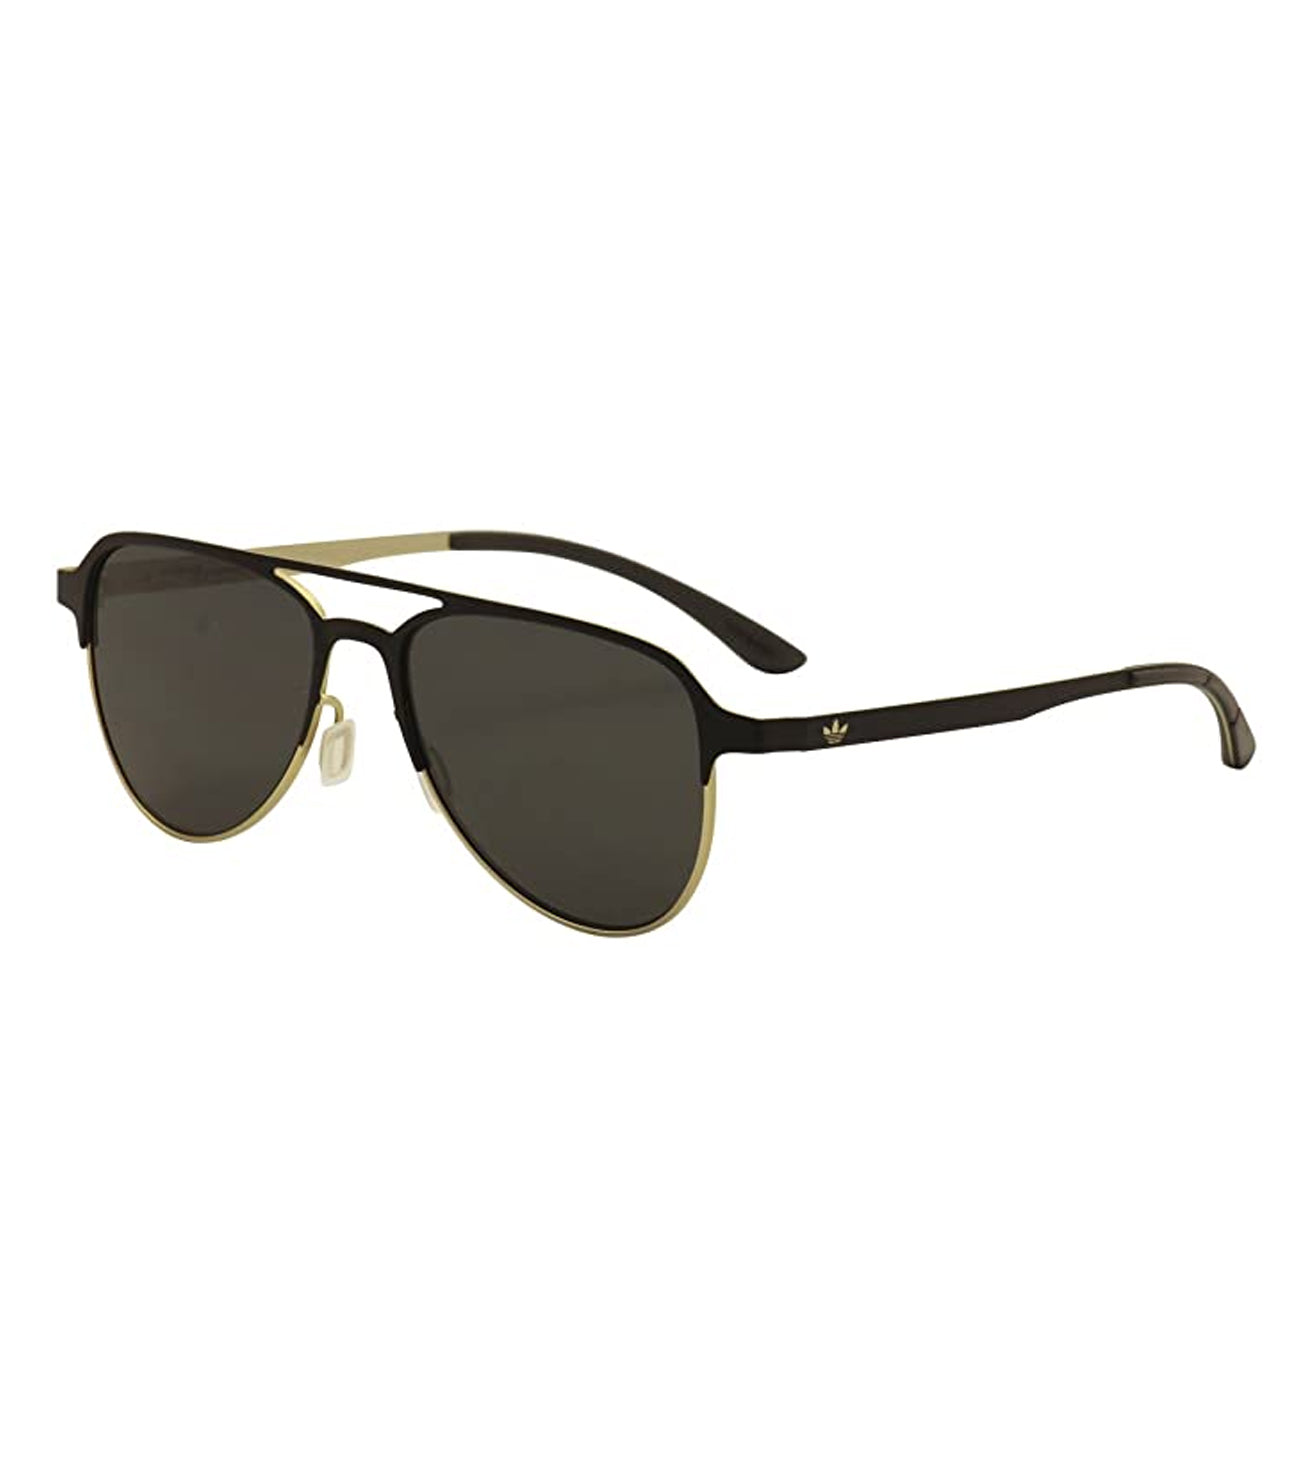 Adidas Originals Men's Light Grey Aviator Sunglasses